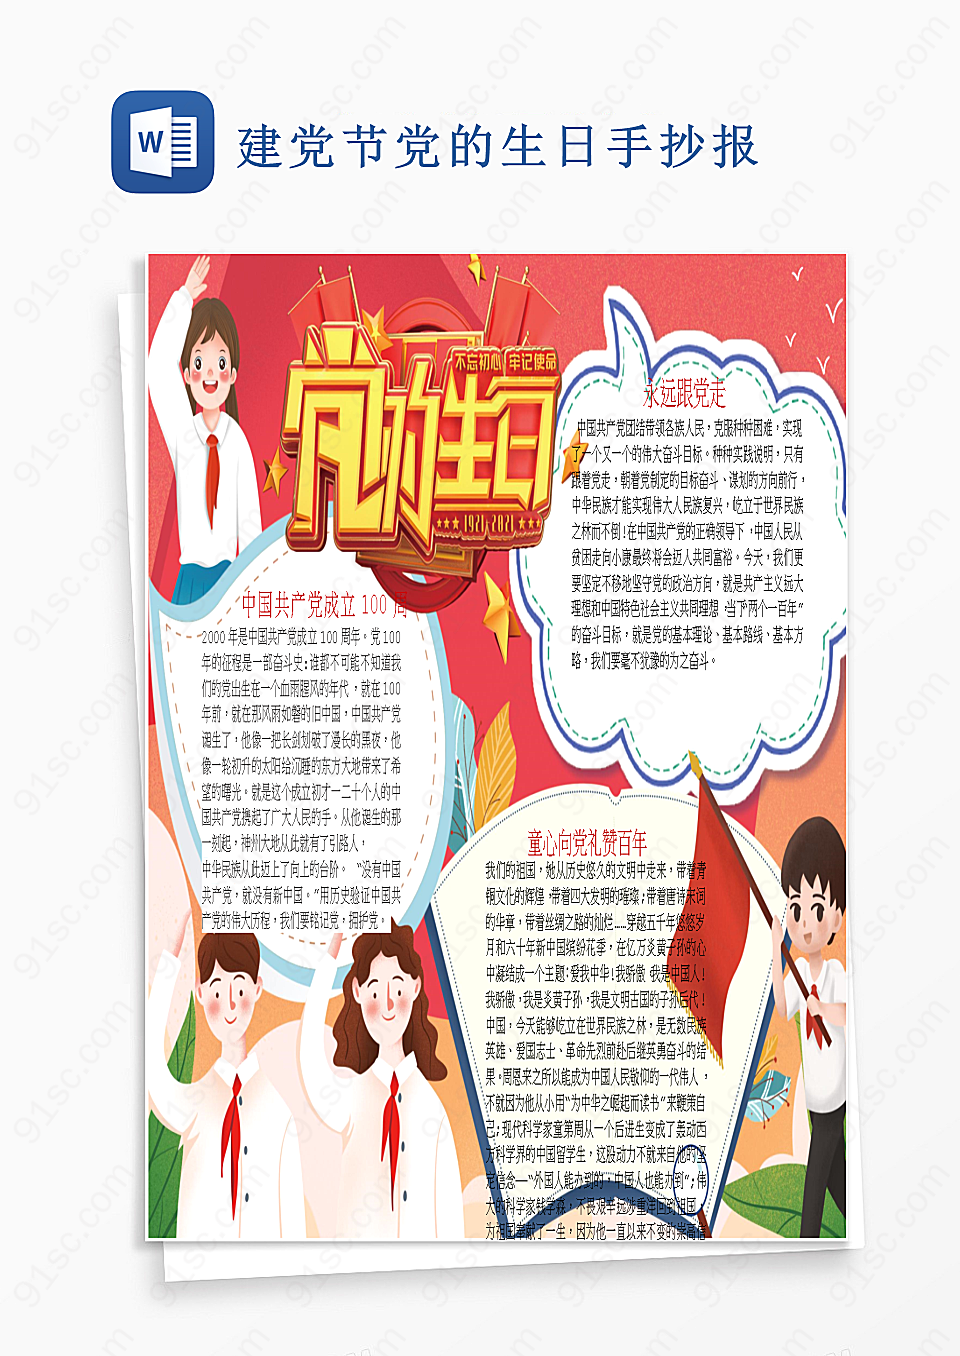 初心不改砥砺前行——庆祝中国共产党成立99周年Word模板下载